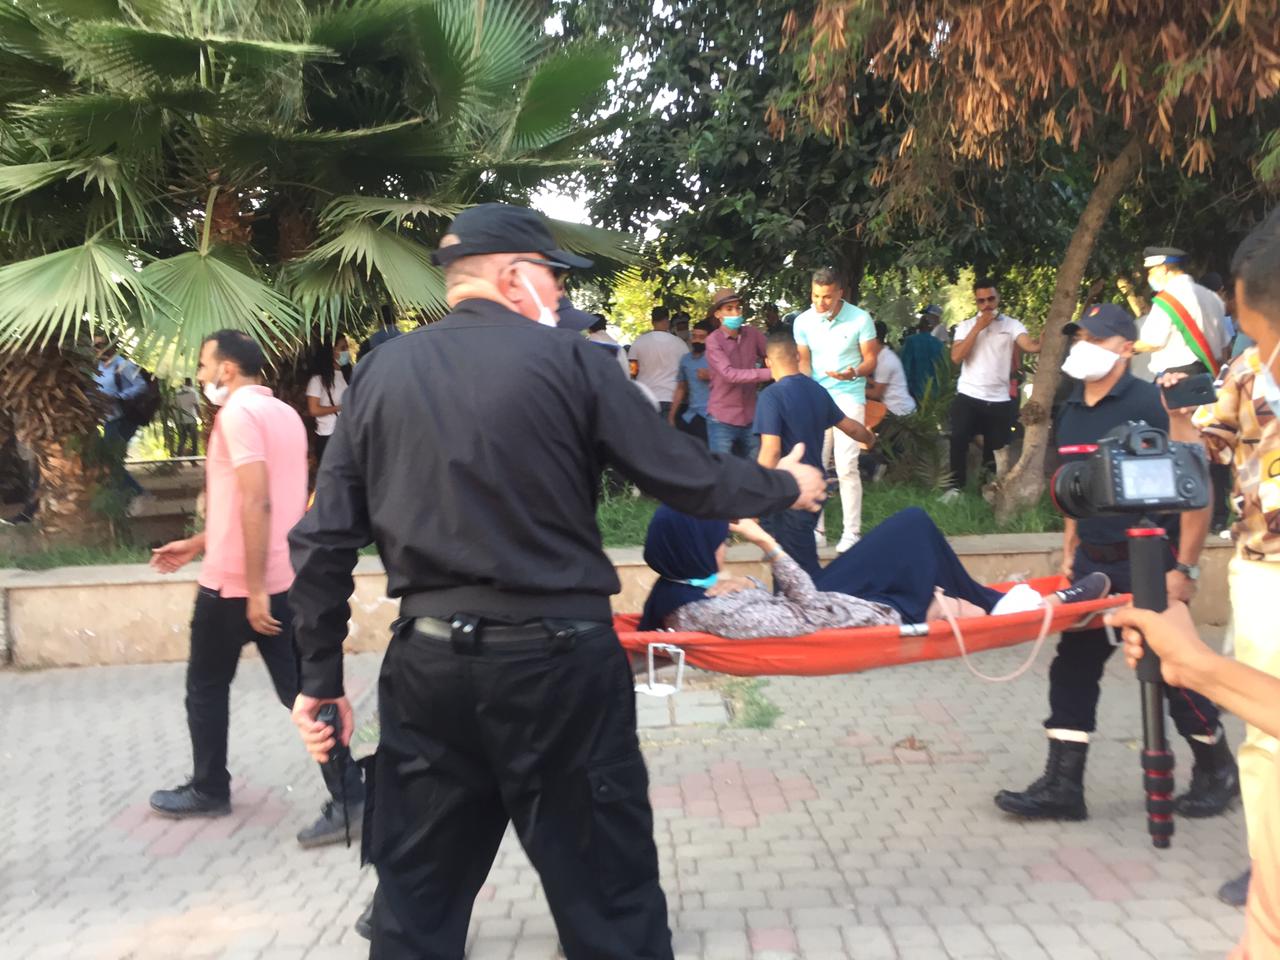 اغماءات وإصابات في احتجاجات الأستاذة المتعاقدين بمراكش وسط منع من السلطات الأمنية